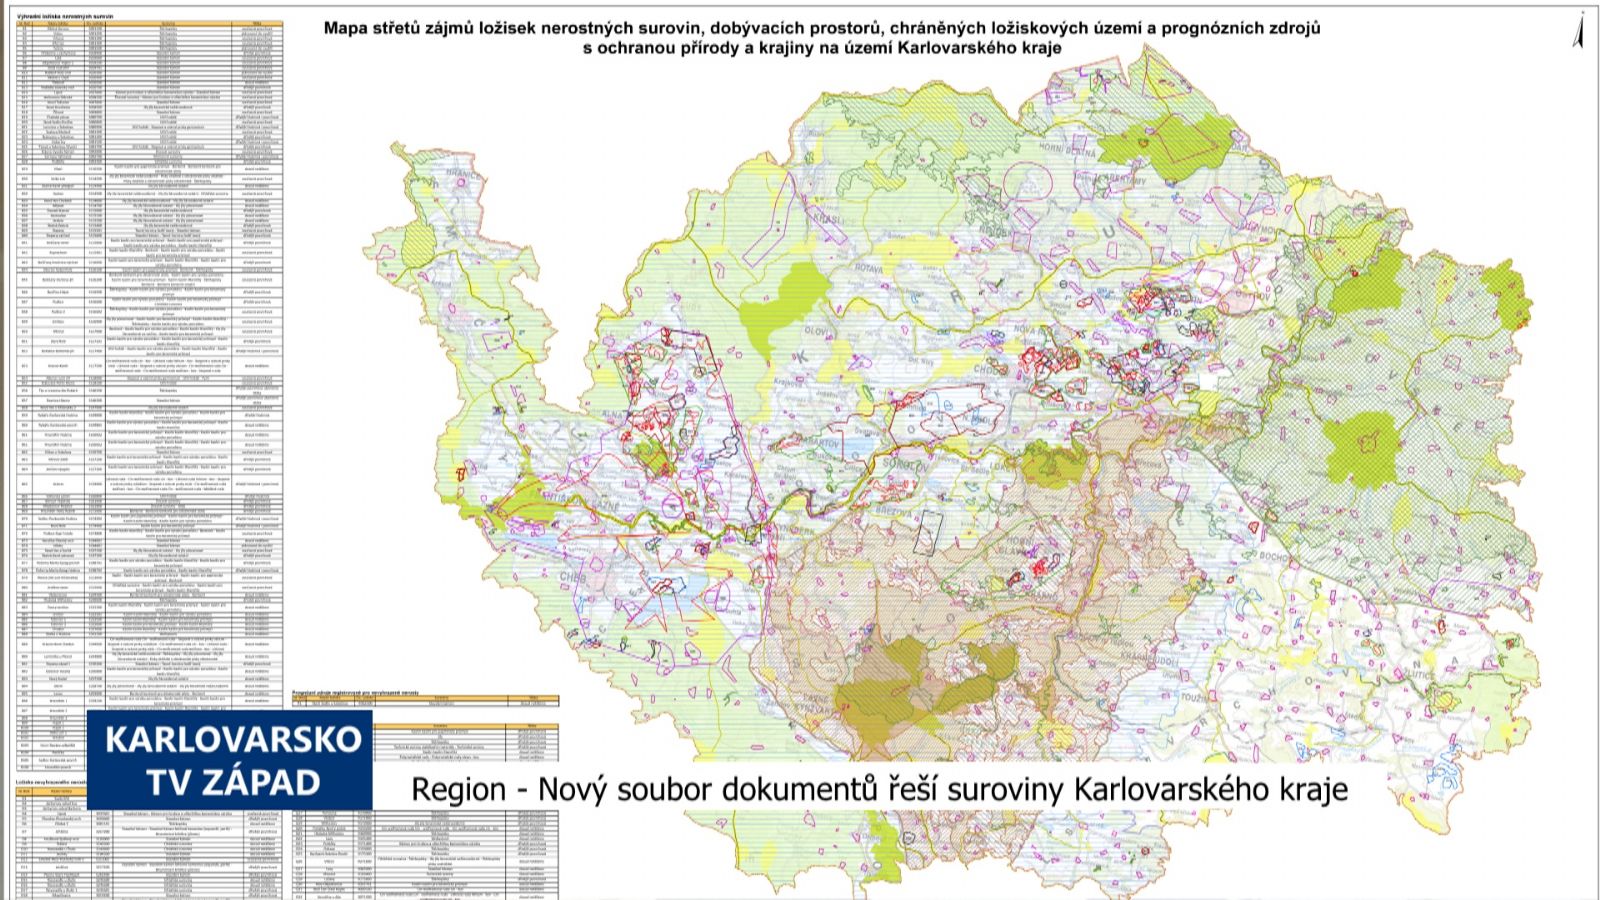 Region: Nový soubor dokumentů řeší suroviny Karlovarského kraje (TV Západ)